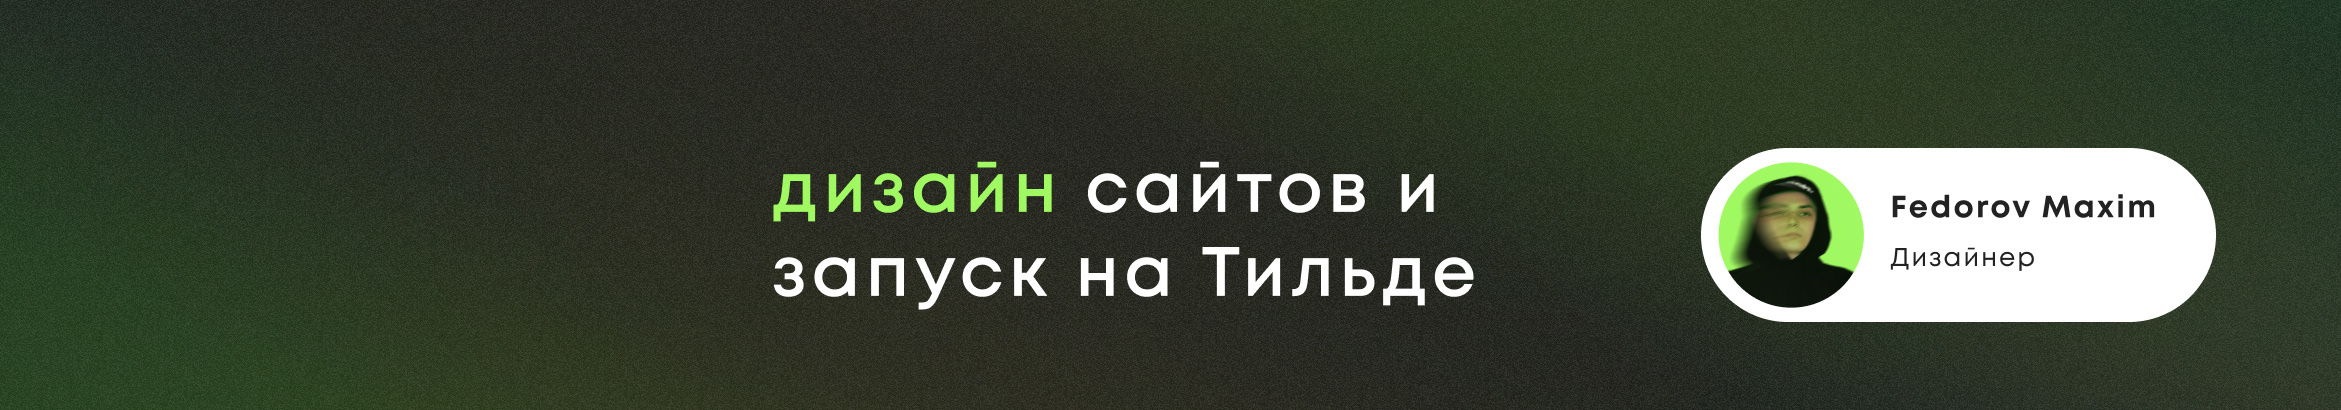 Profil-Banner von Maxim Fedorov